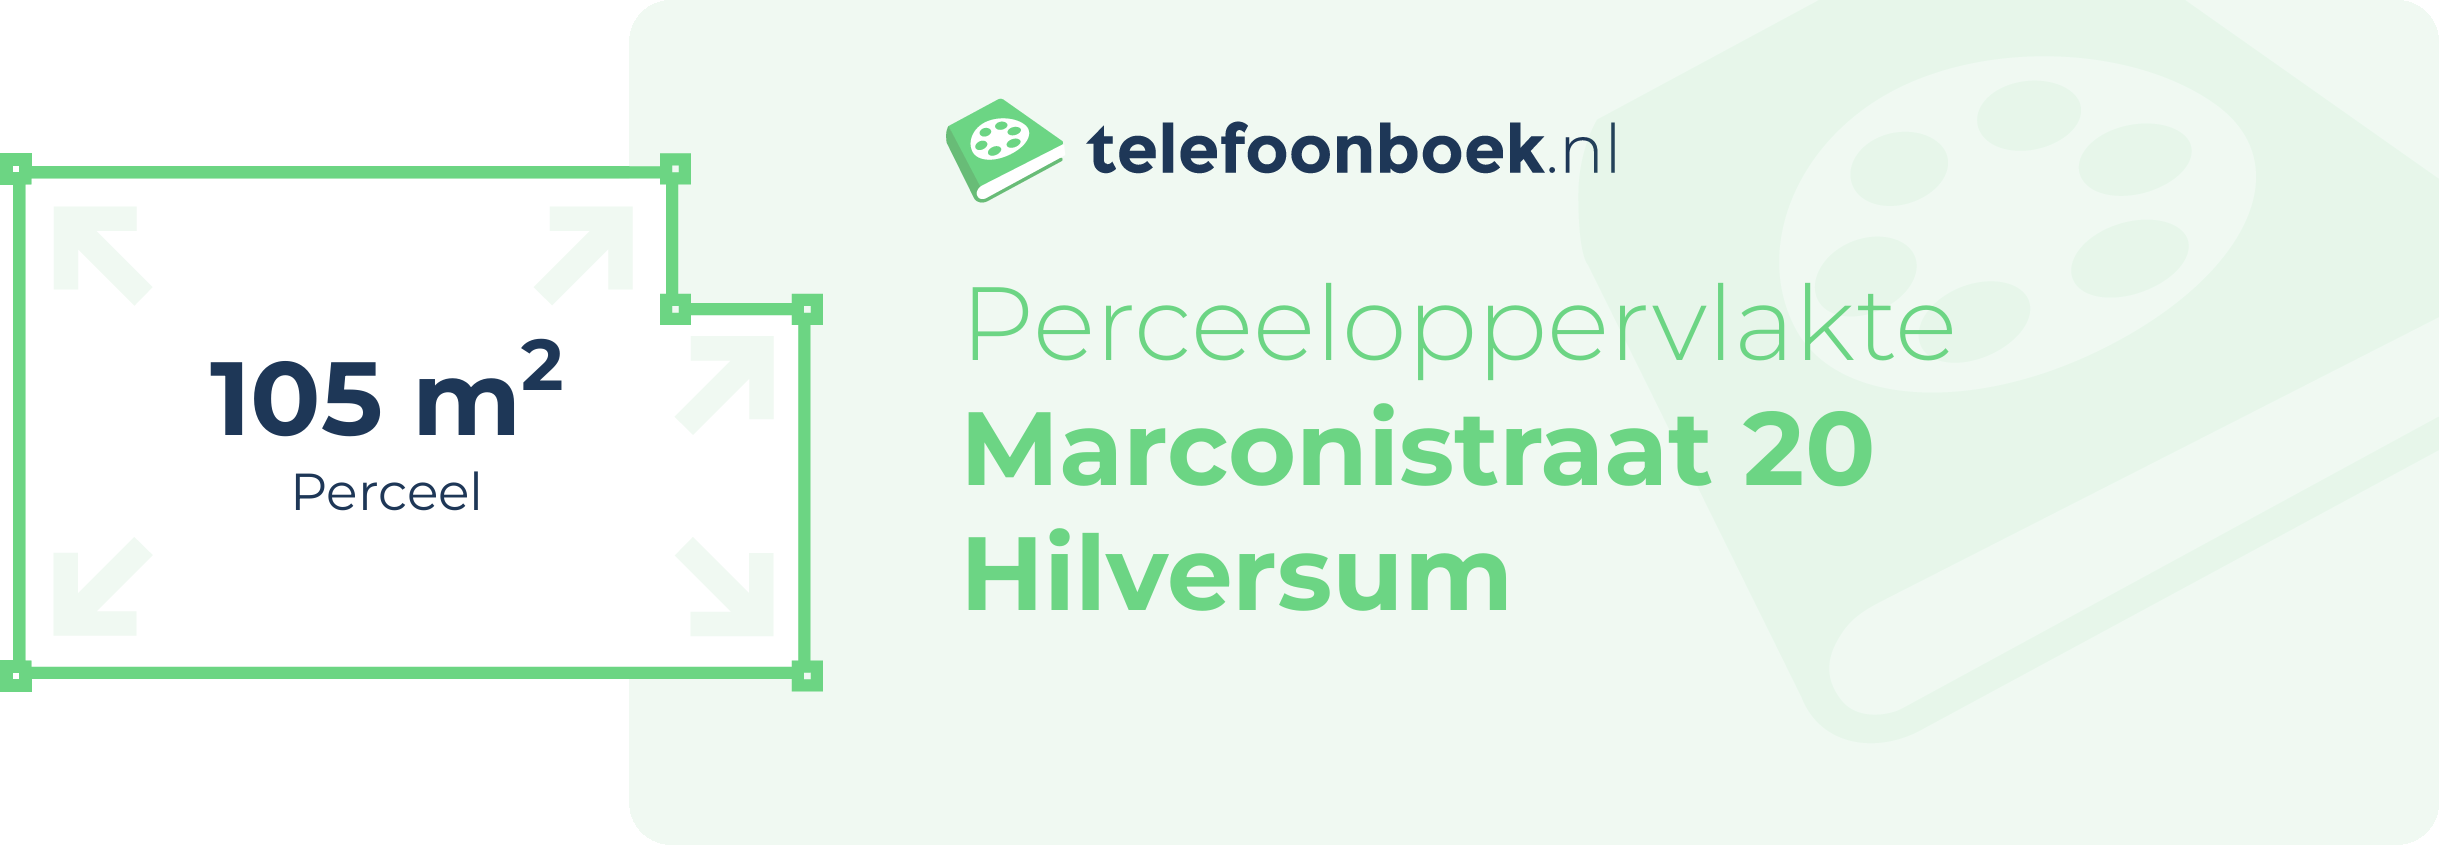 Perceeloppervlakte Marconistraat 20 Hilversum